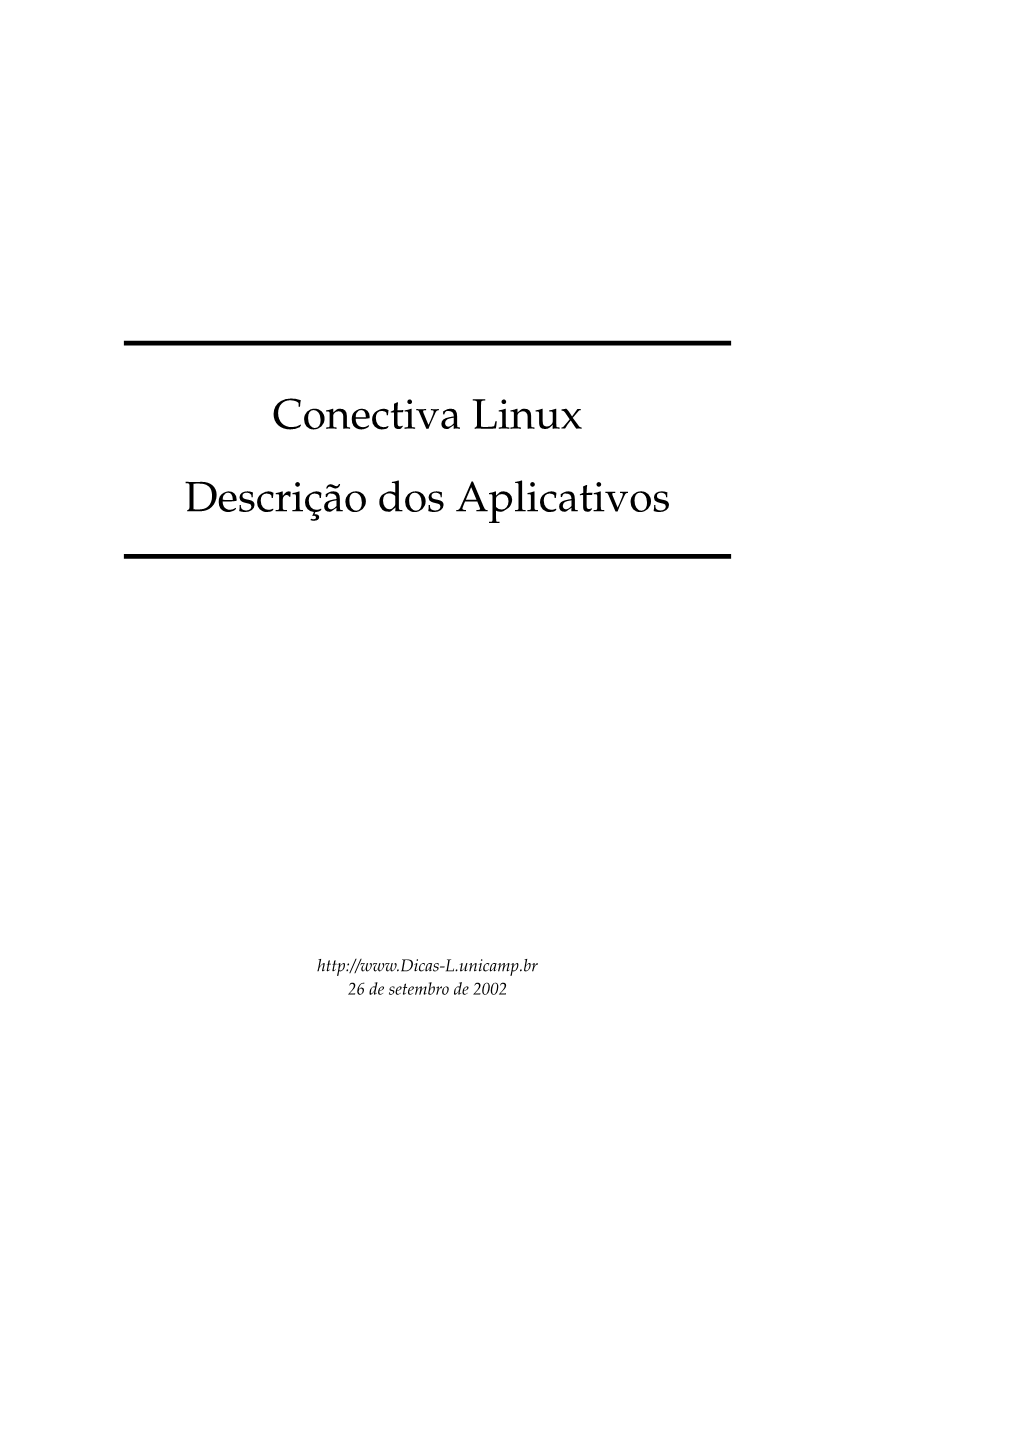 Conectiva Linux Descrição Dos Aplicativos